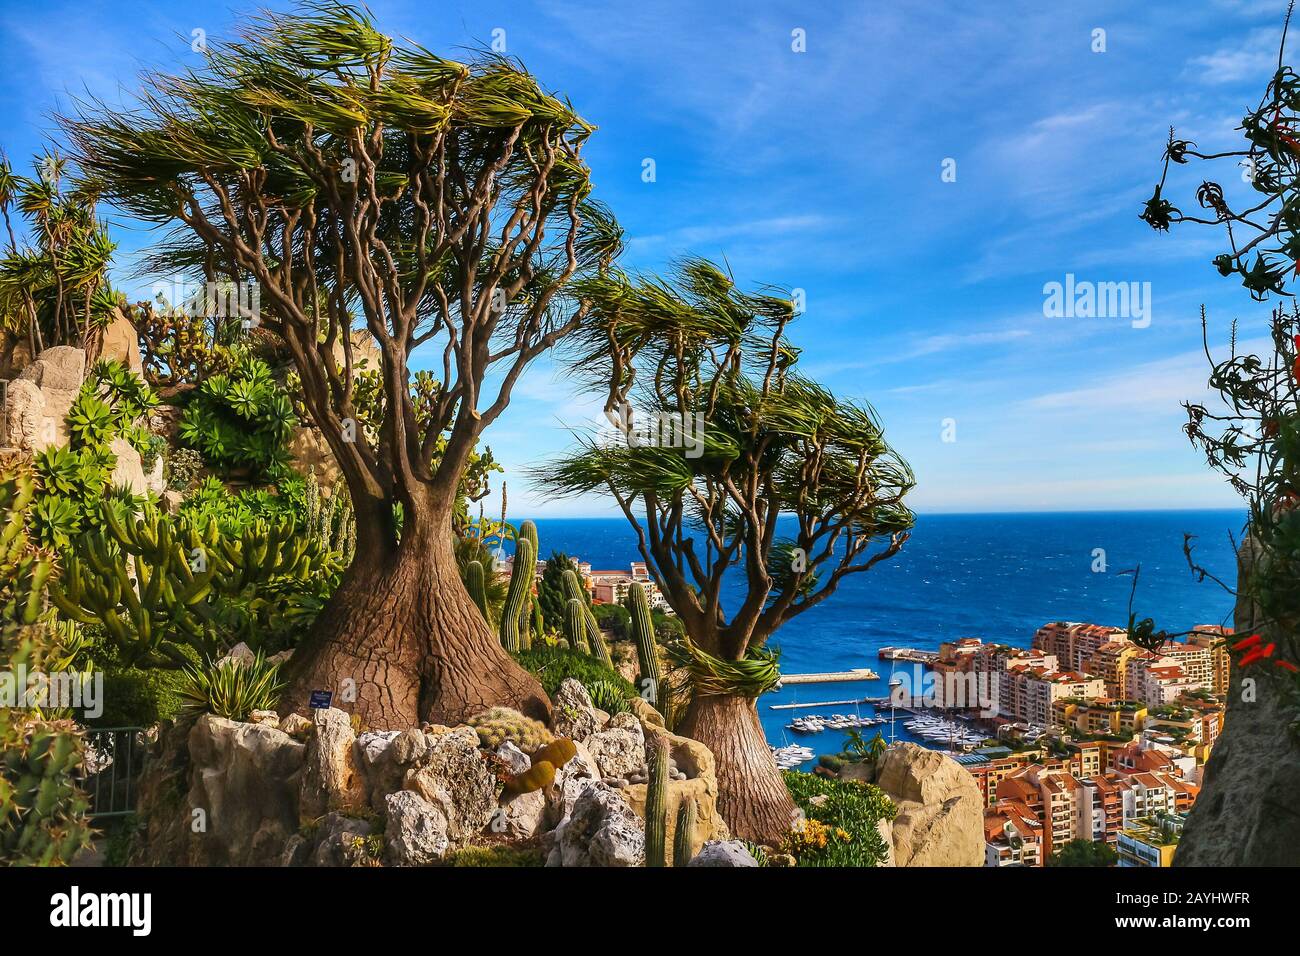 Monaco-Ville, Monaco - 28. Januar 2020: Beaucarnea recurvata (Elefantenfuß), mit Fontvielle Hafen und Mittelmeer im Hintergrund. Stockfoto